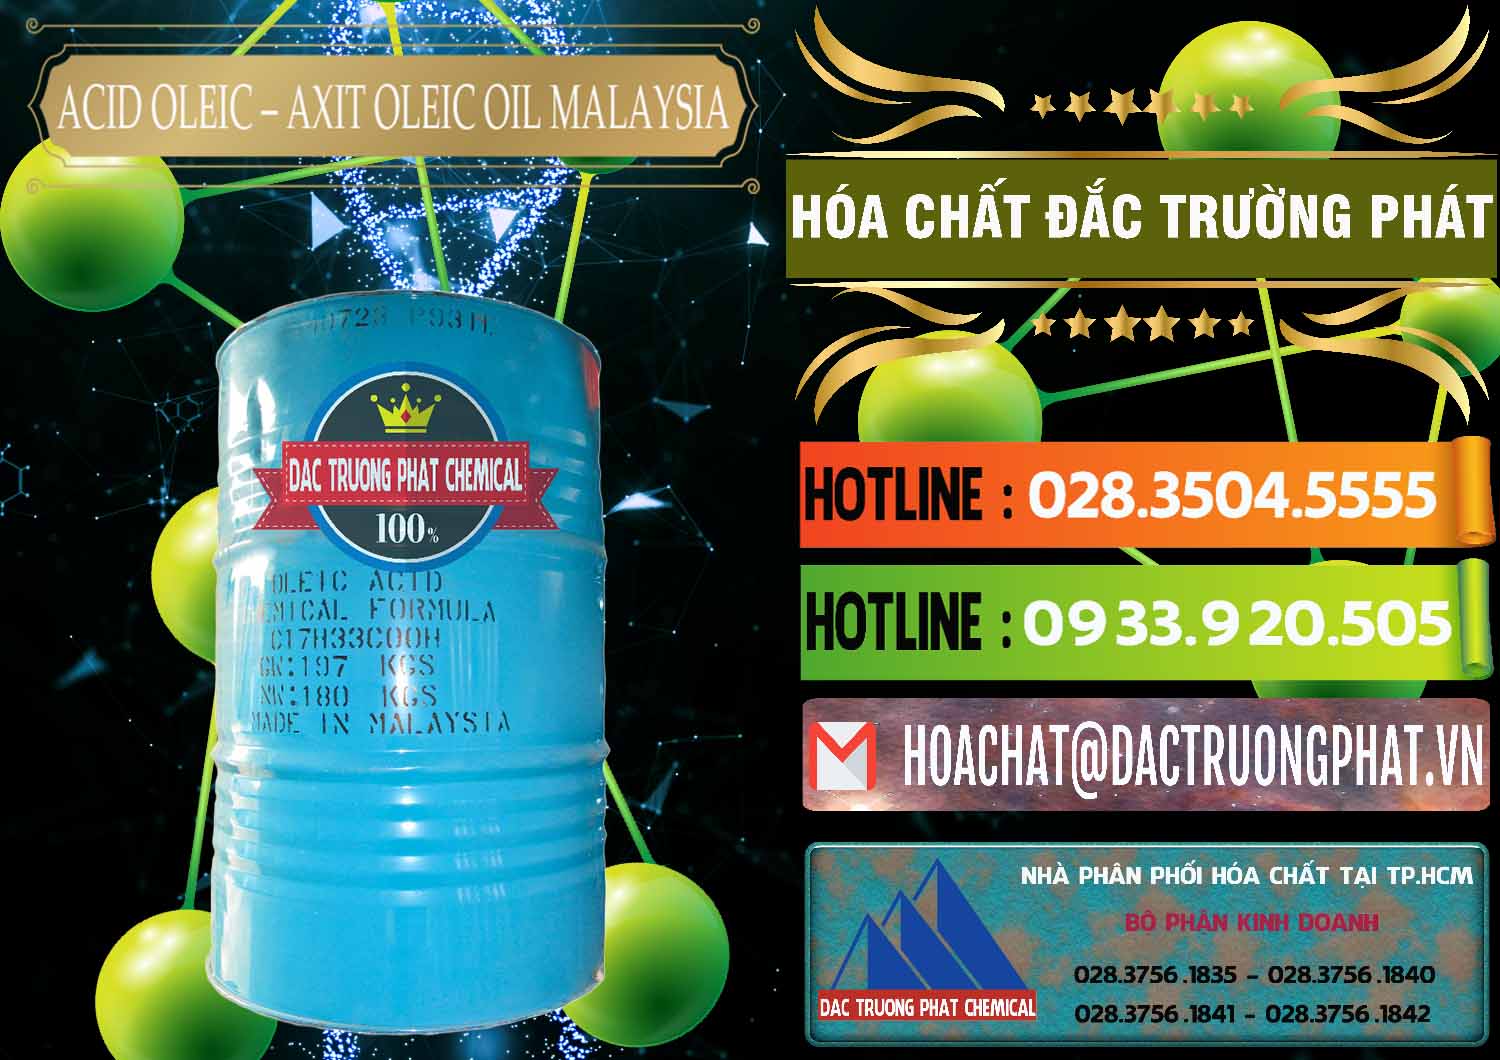 Cty cung ứng - bán Acid Oleic – Axit Oleic Oil Malaysia - 0013 - Công ty chuyên kinh doanh & phân phối hóa chất tại TP.HCM - cungcaphoachat.com.vn